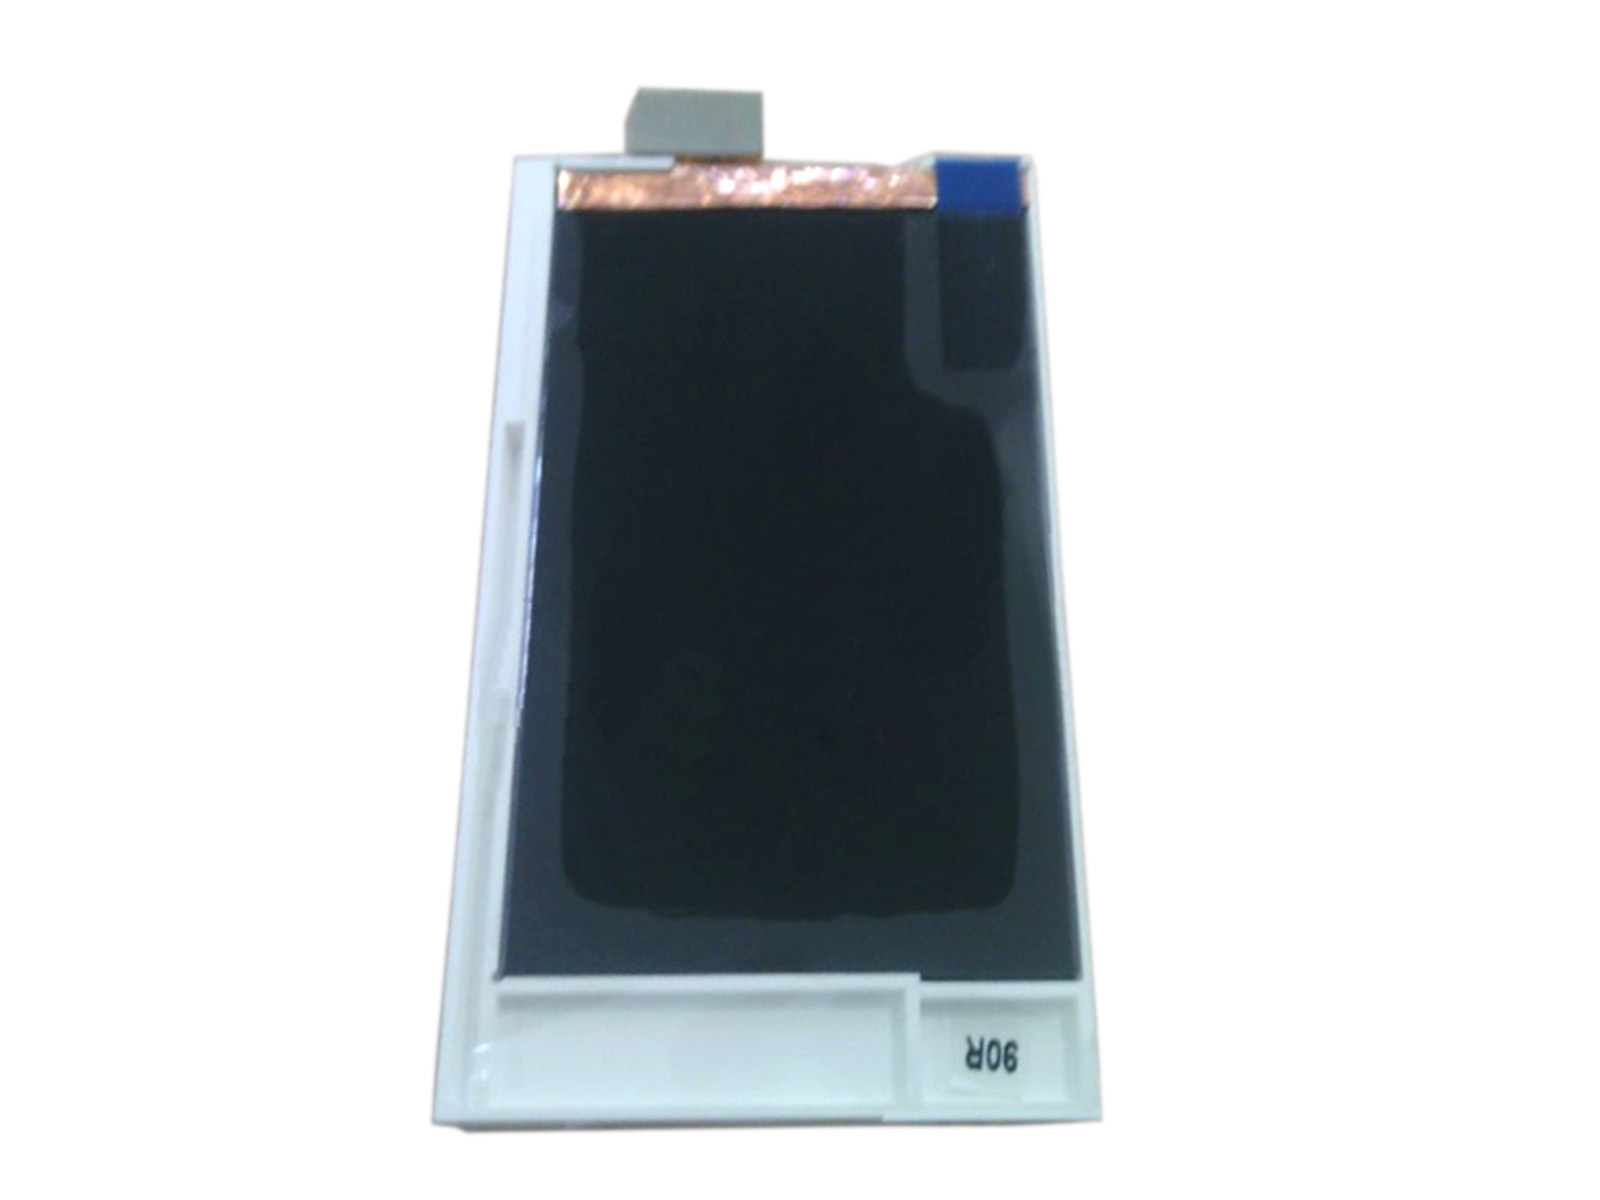 Asus M930 LCD